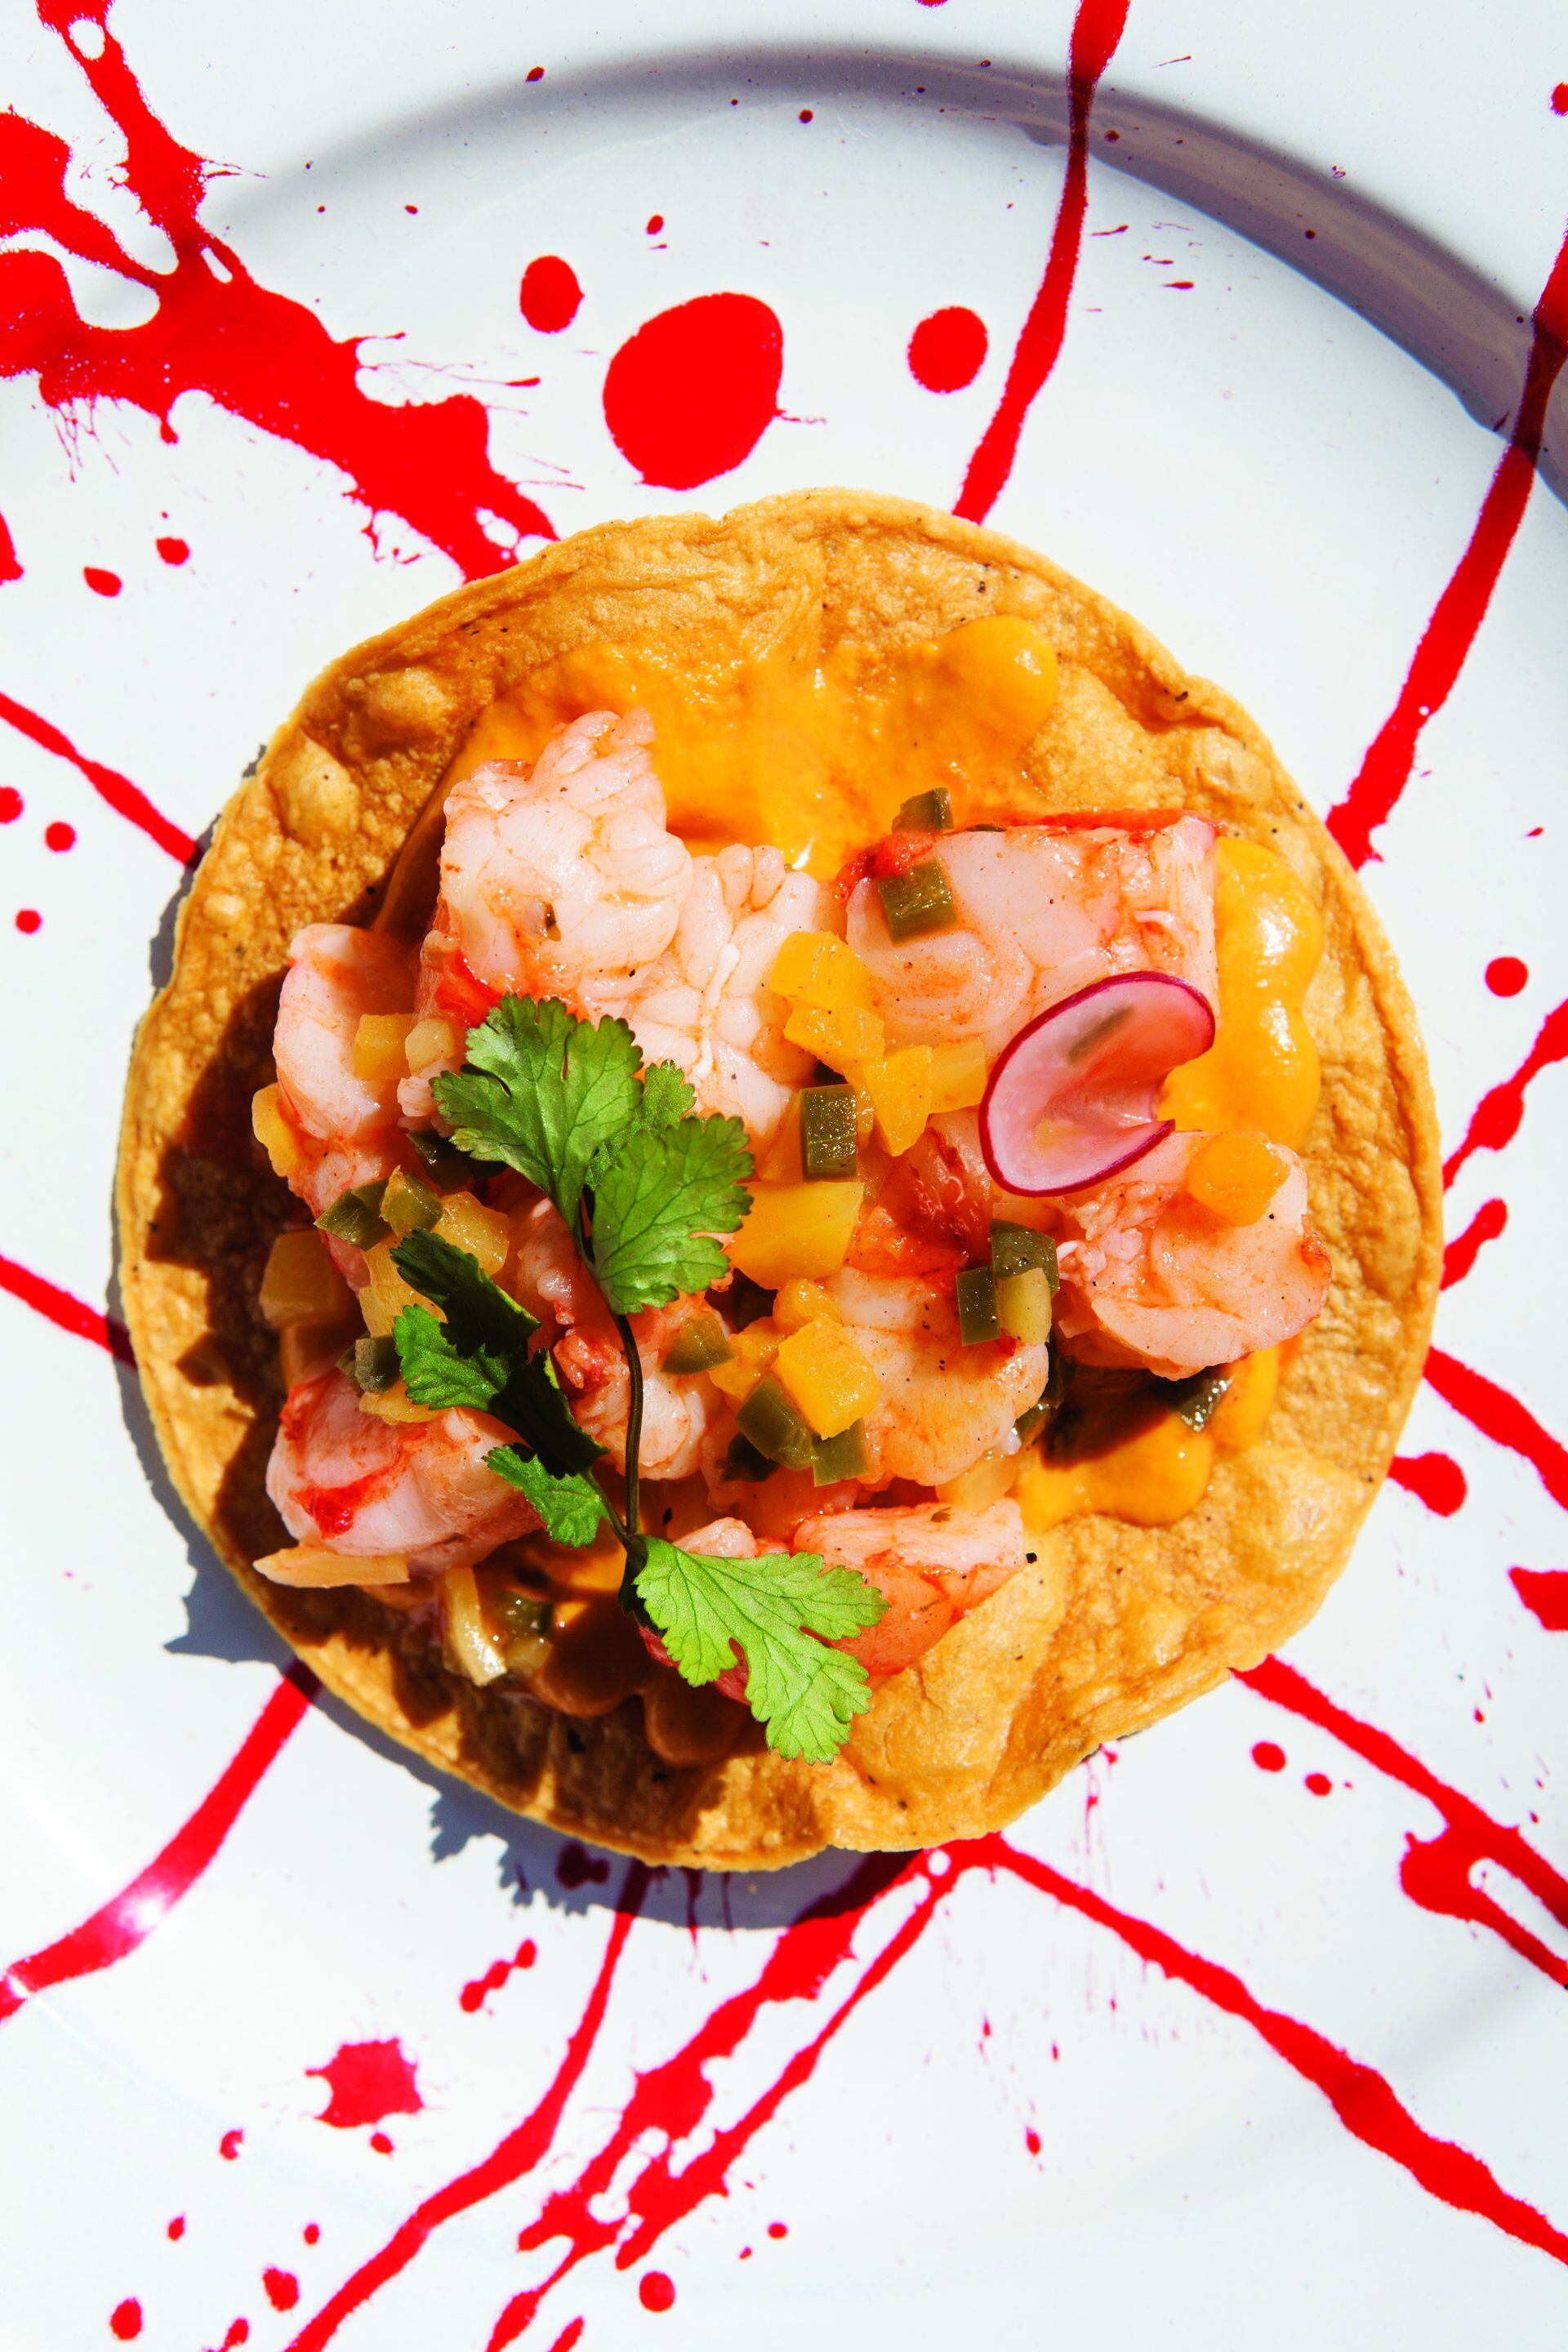 Ya Cabrón se inspira en la cocina mexicana y se permiten ciertas licencias.